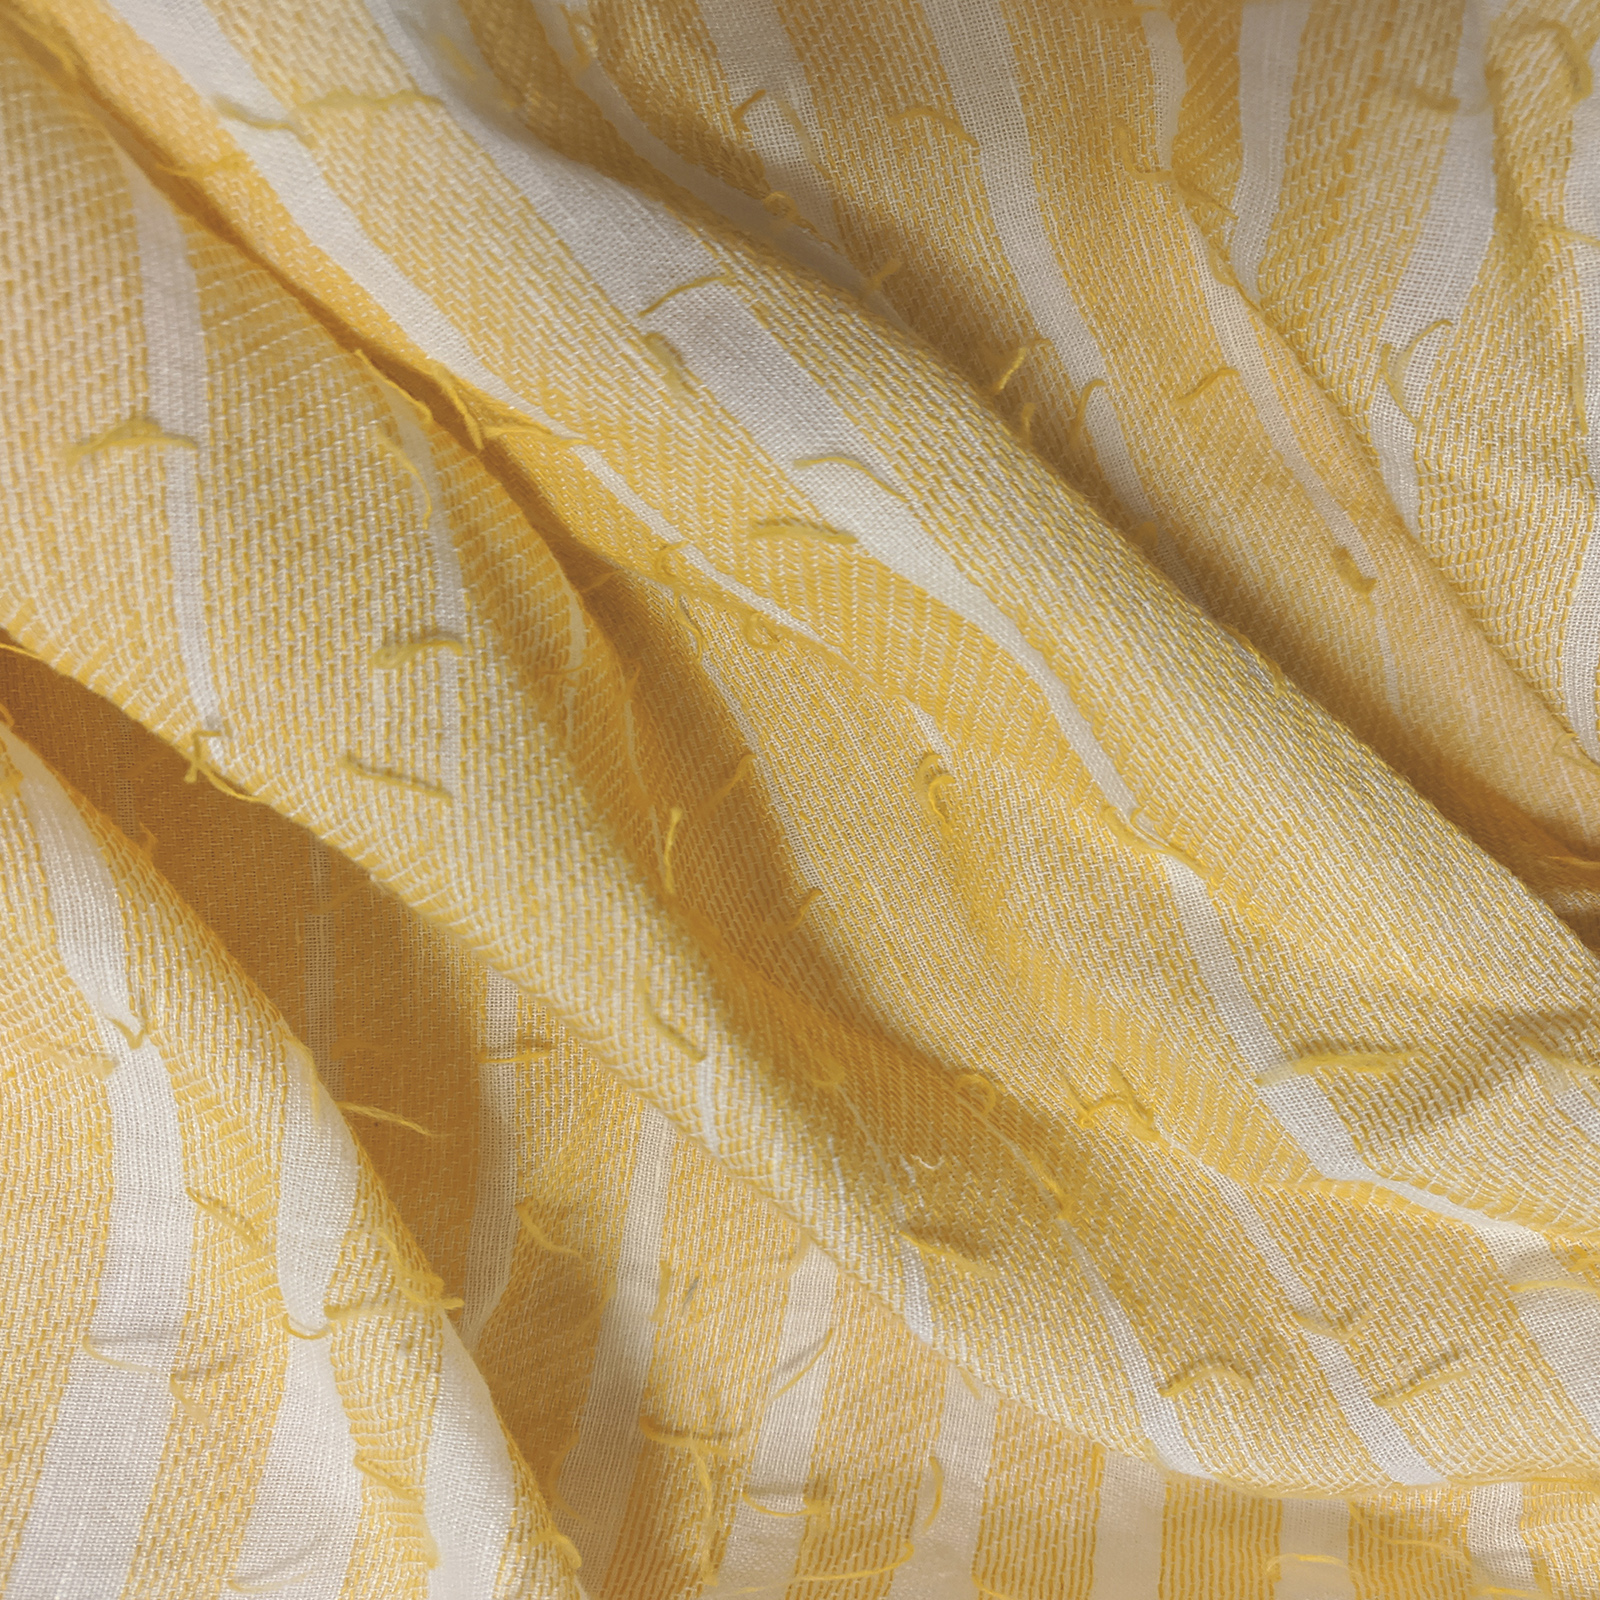 Tessuto semitrasparente per tendaggi. Forniture per arredamento, contract, editoria tessile, grossisti e dettaglio